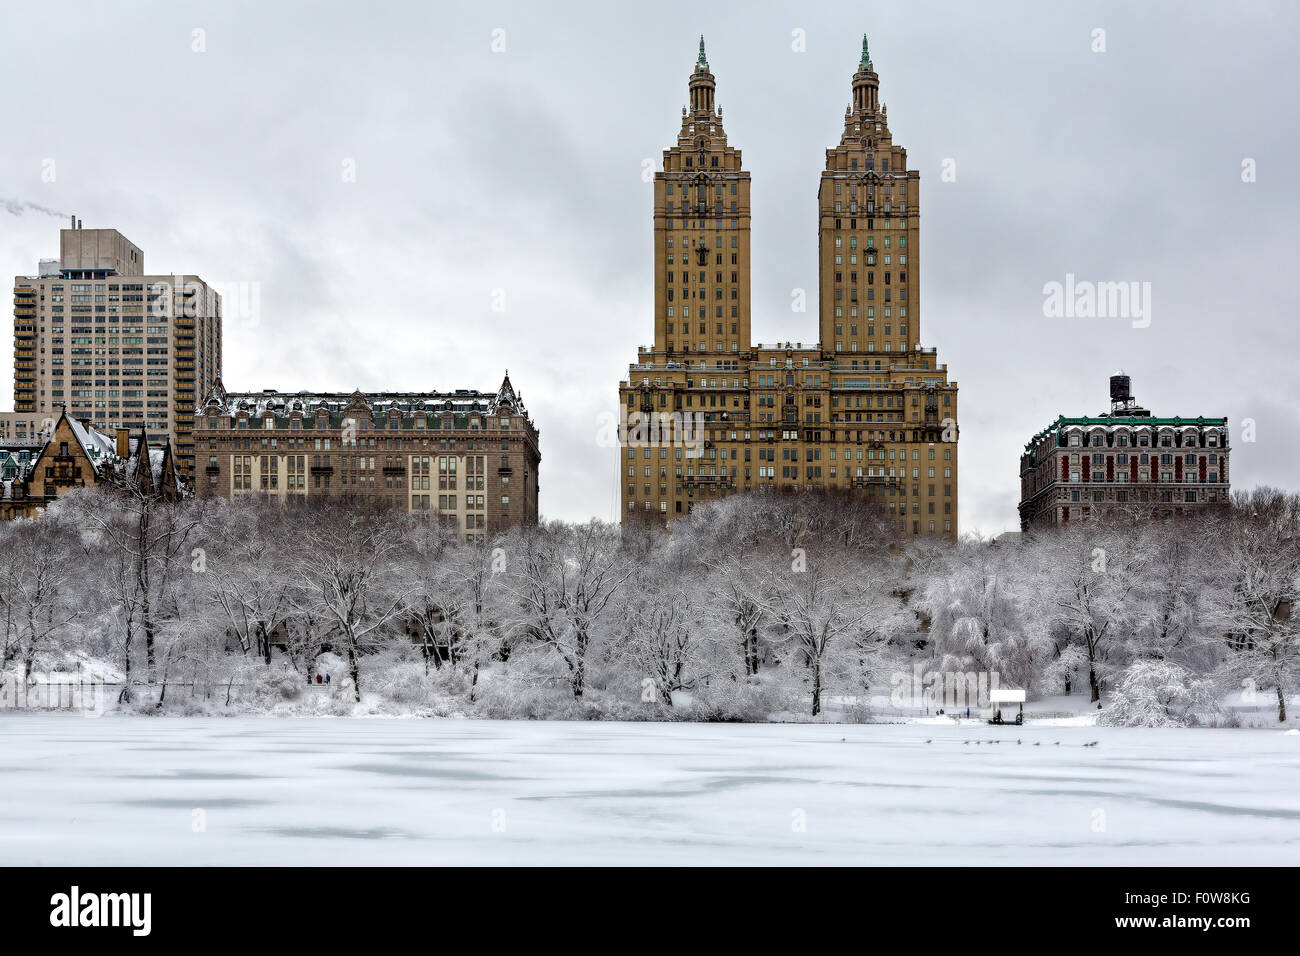 Las torres de San Remo en el uptown de Manhattan, con el lago congelado y cubierto de nieve en el Central Park de Nueva York. Foto de stock